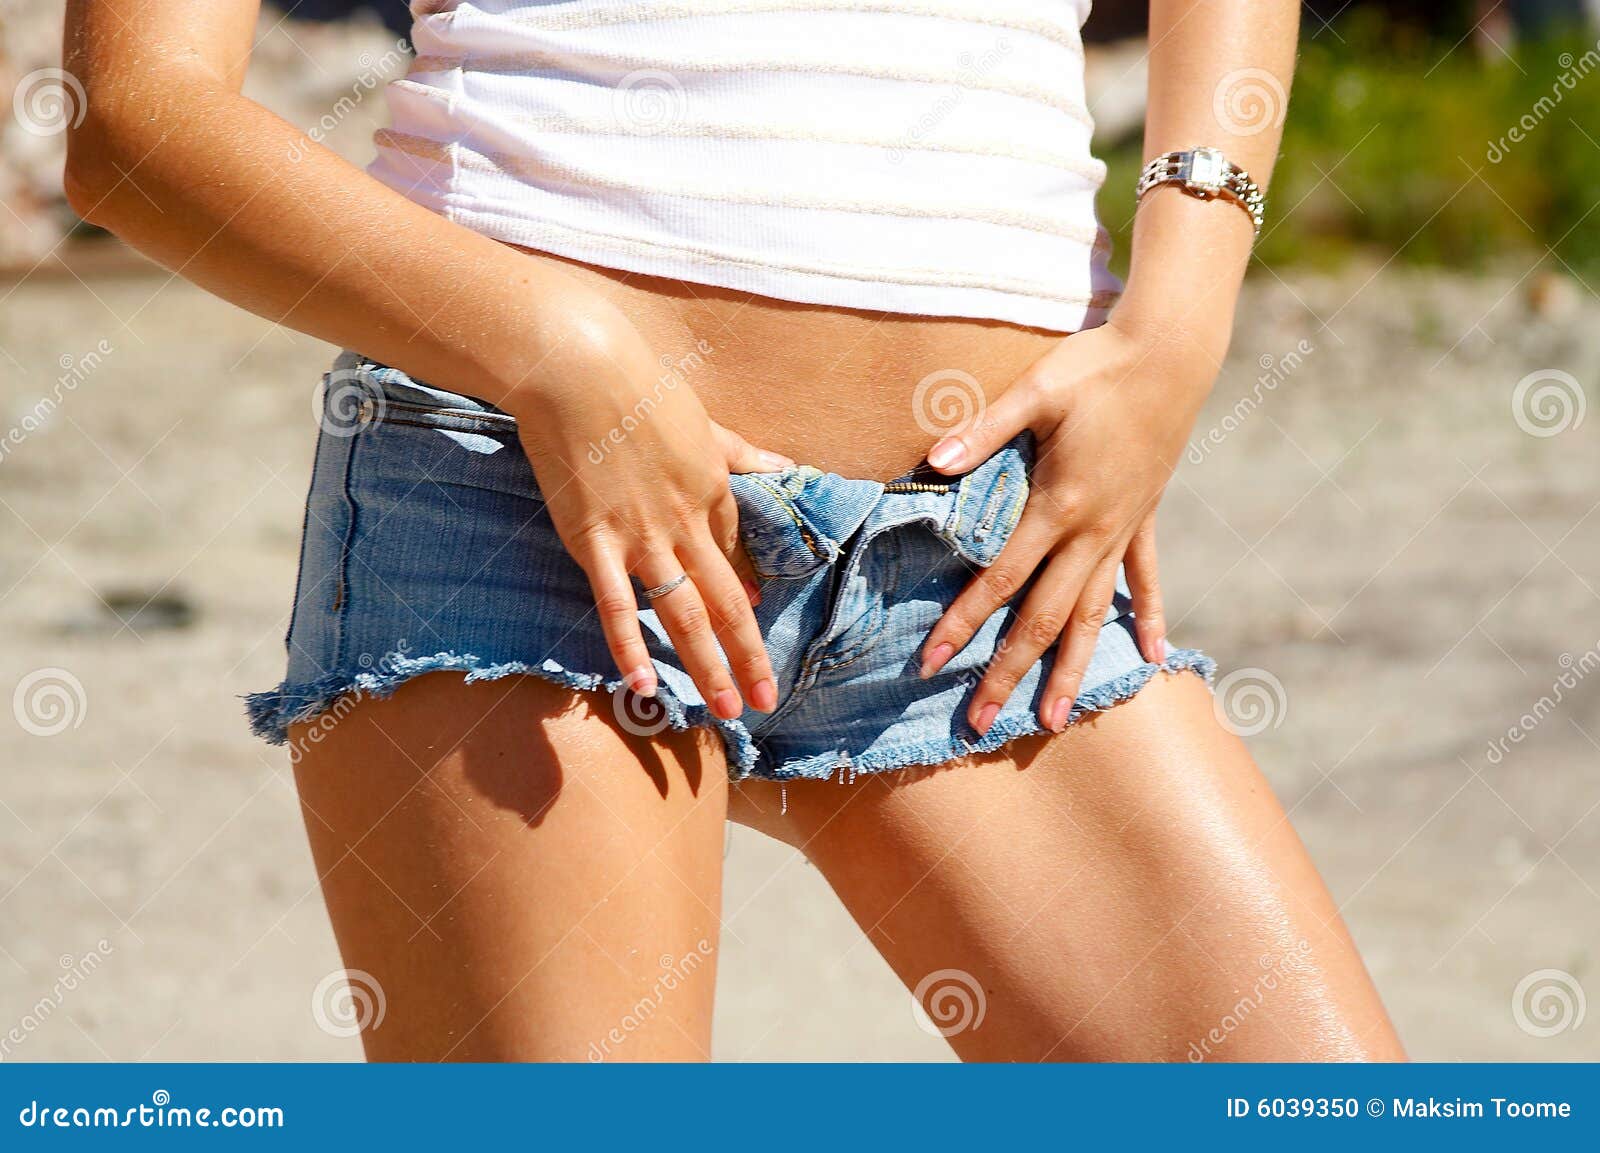 annika watson share tan legs in short shorts photos